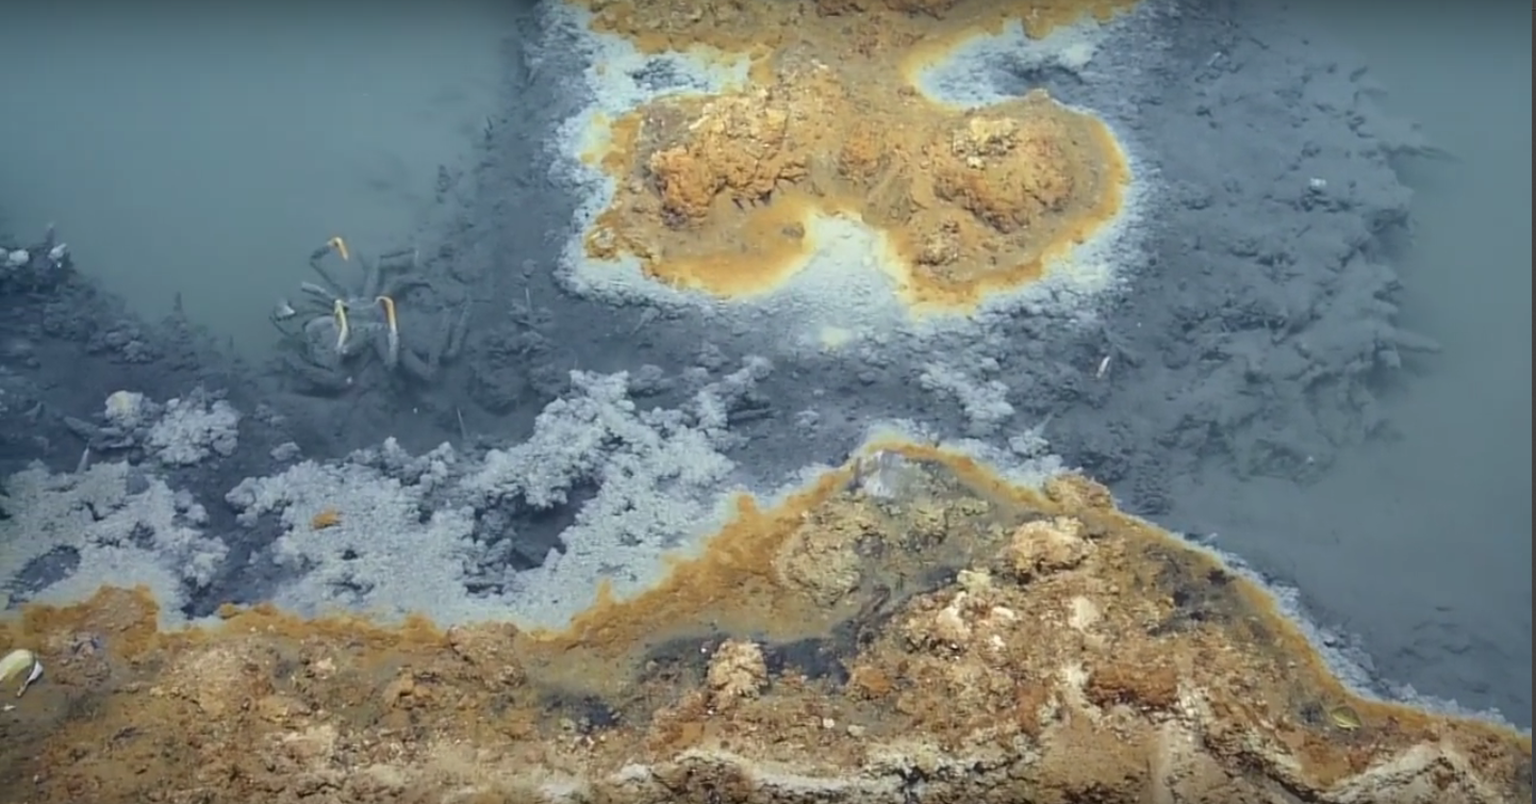 Teadlased avastasid Mehhiko lahe põhjast haruldase soolajärve, mille mürgised veed tapavad pea kõik, mis sinna satub.